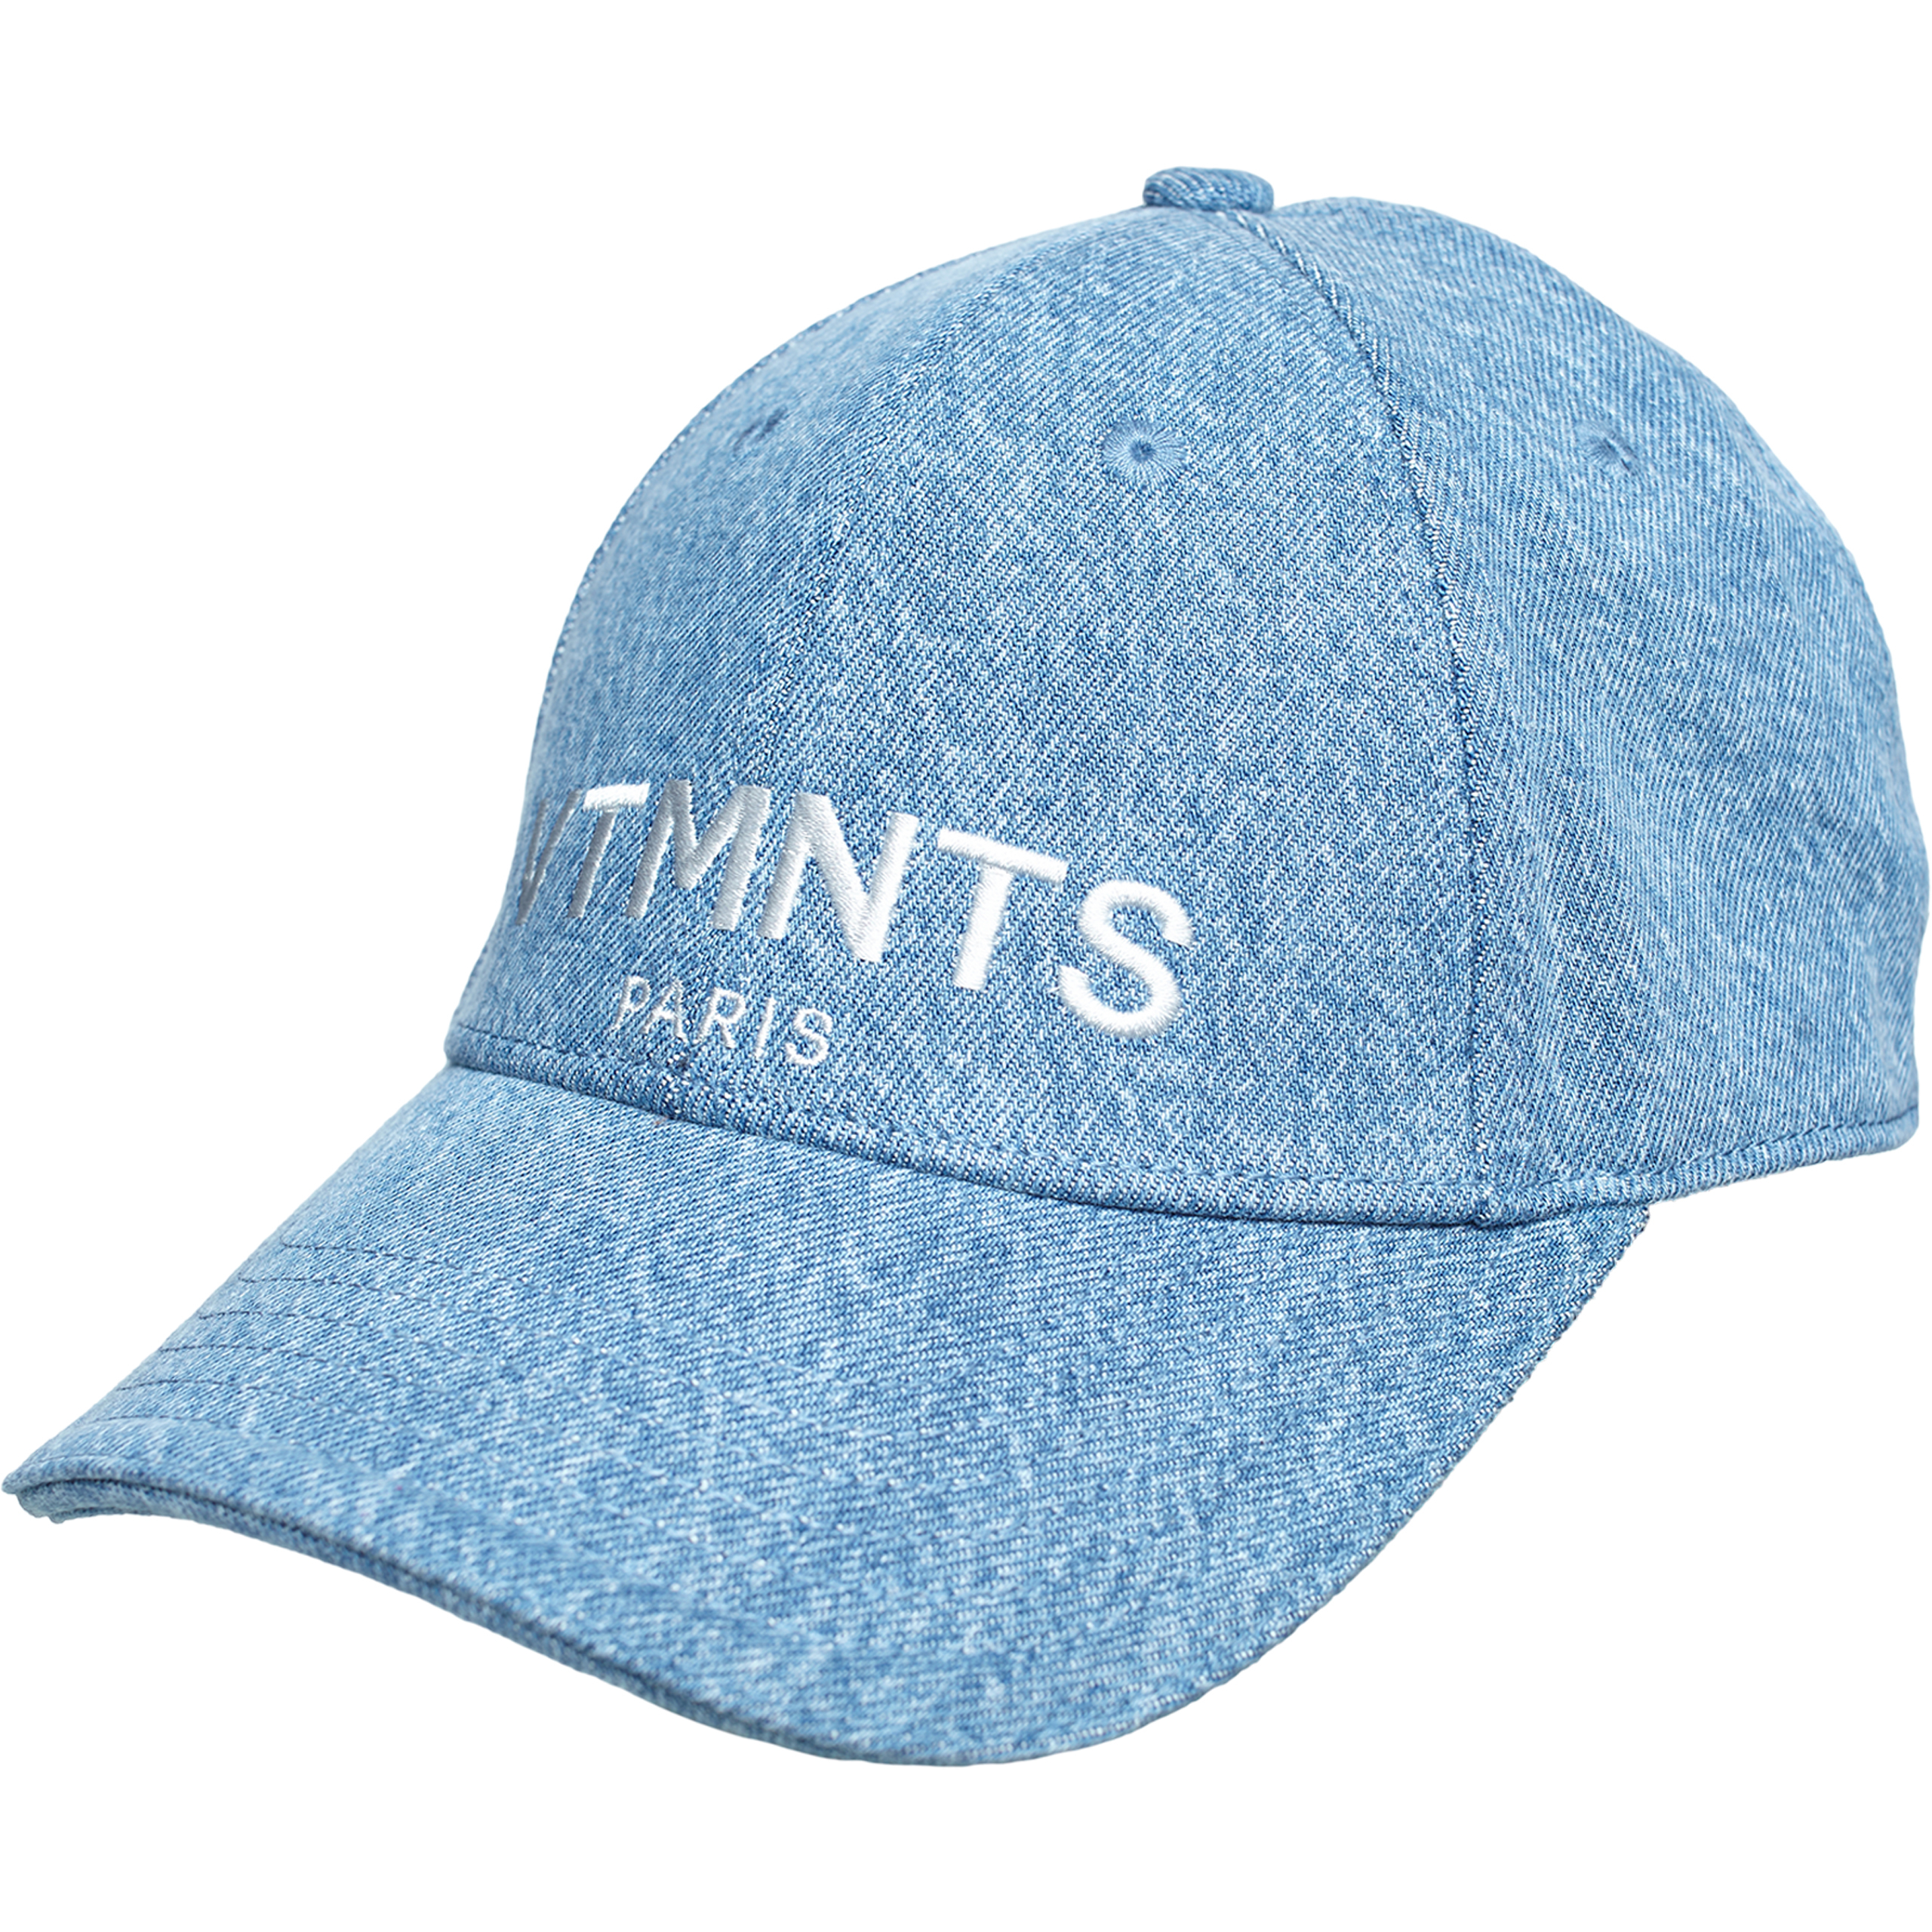 Джинсовая кепка с вышивкой логотипа VTMNTS VL20CA200NW/5401, размер One Size